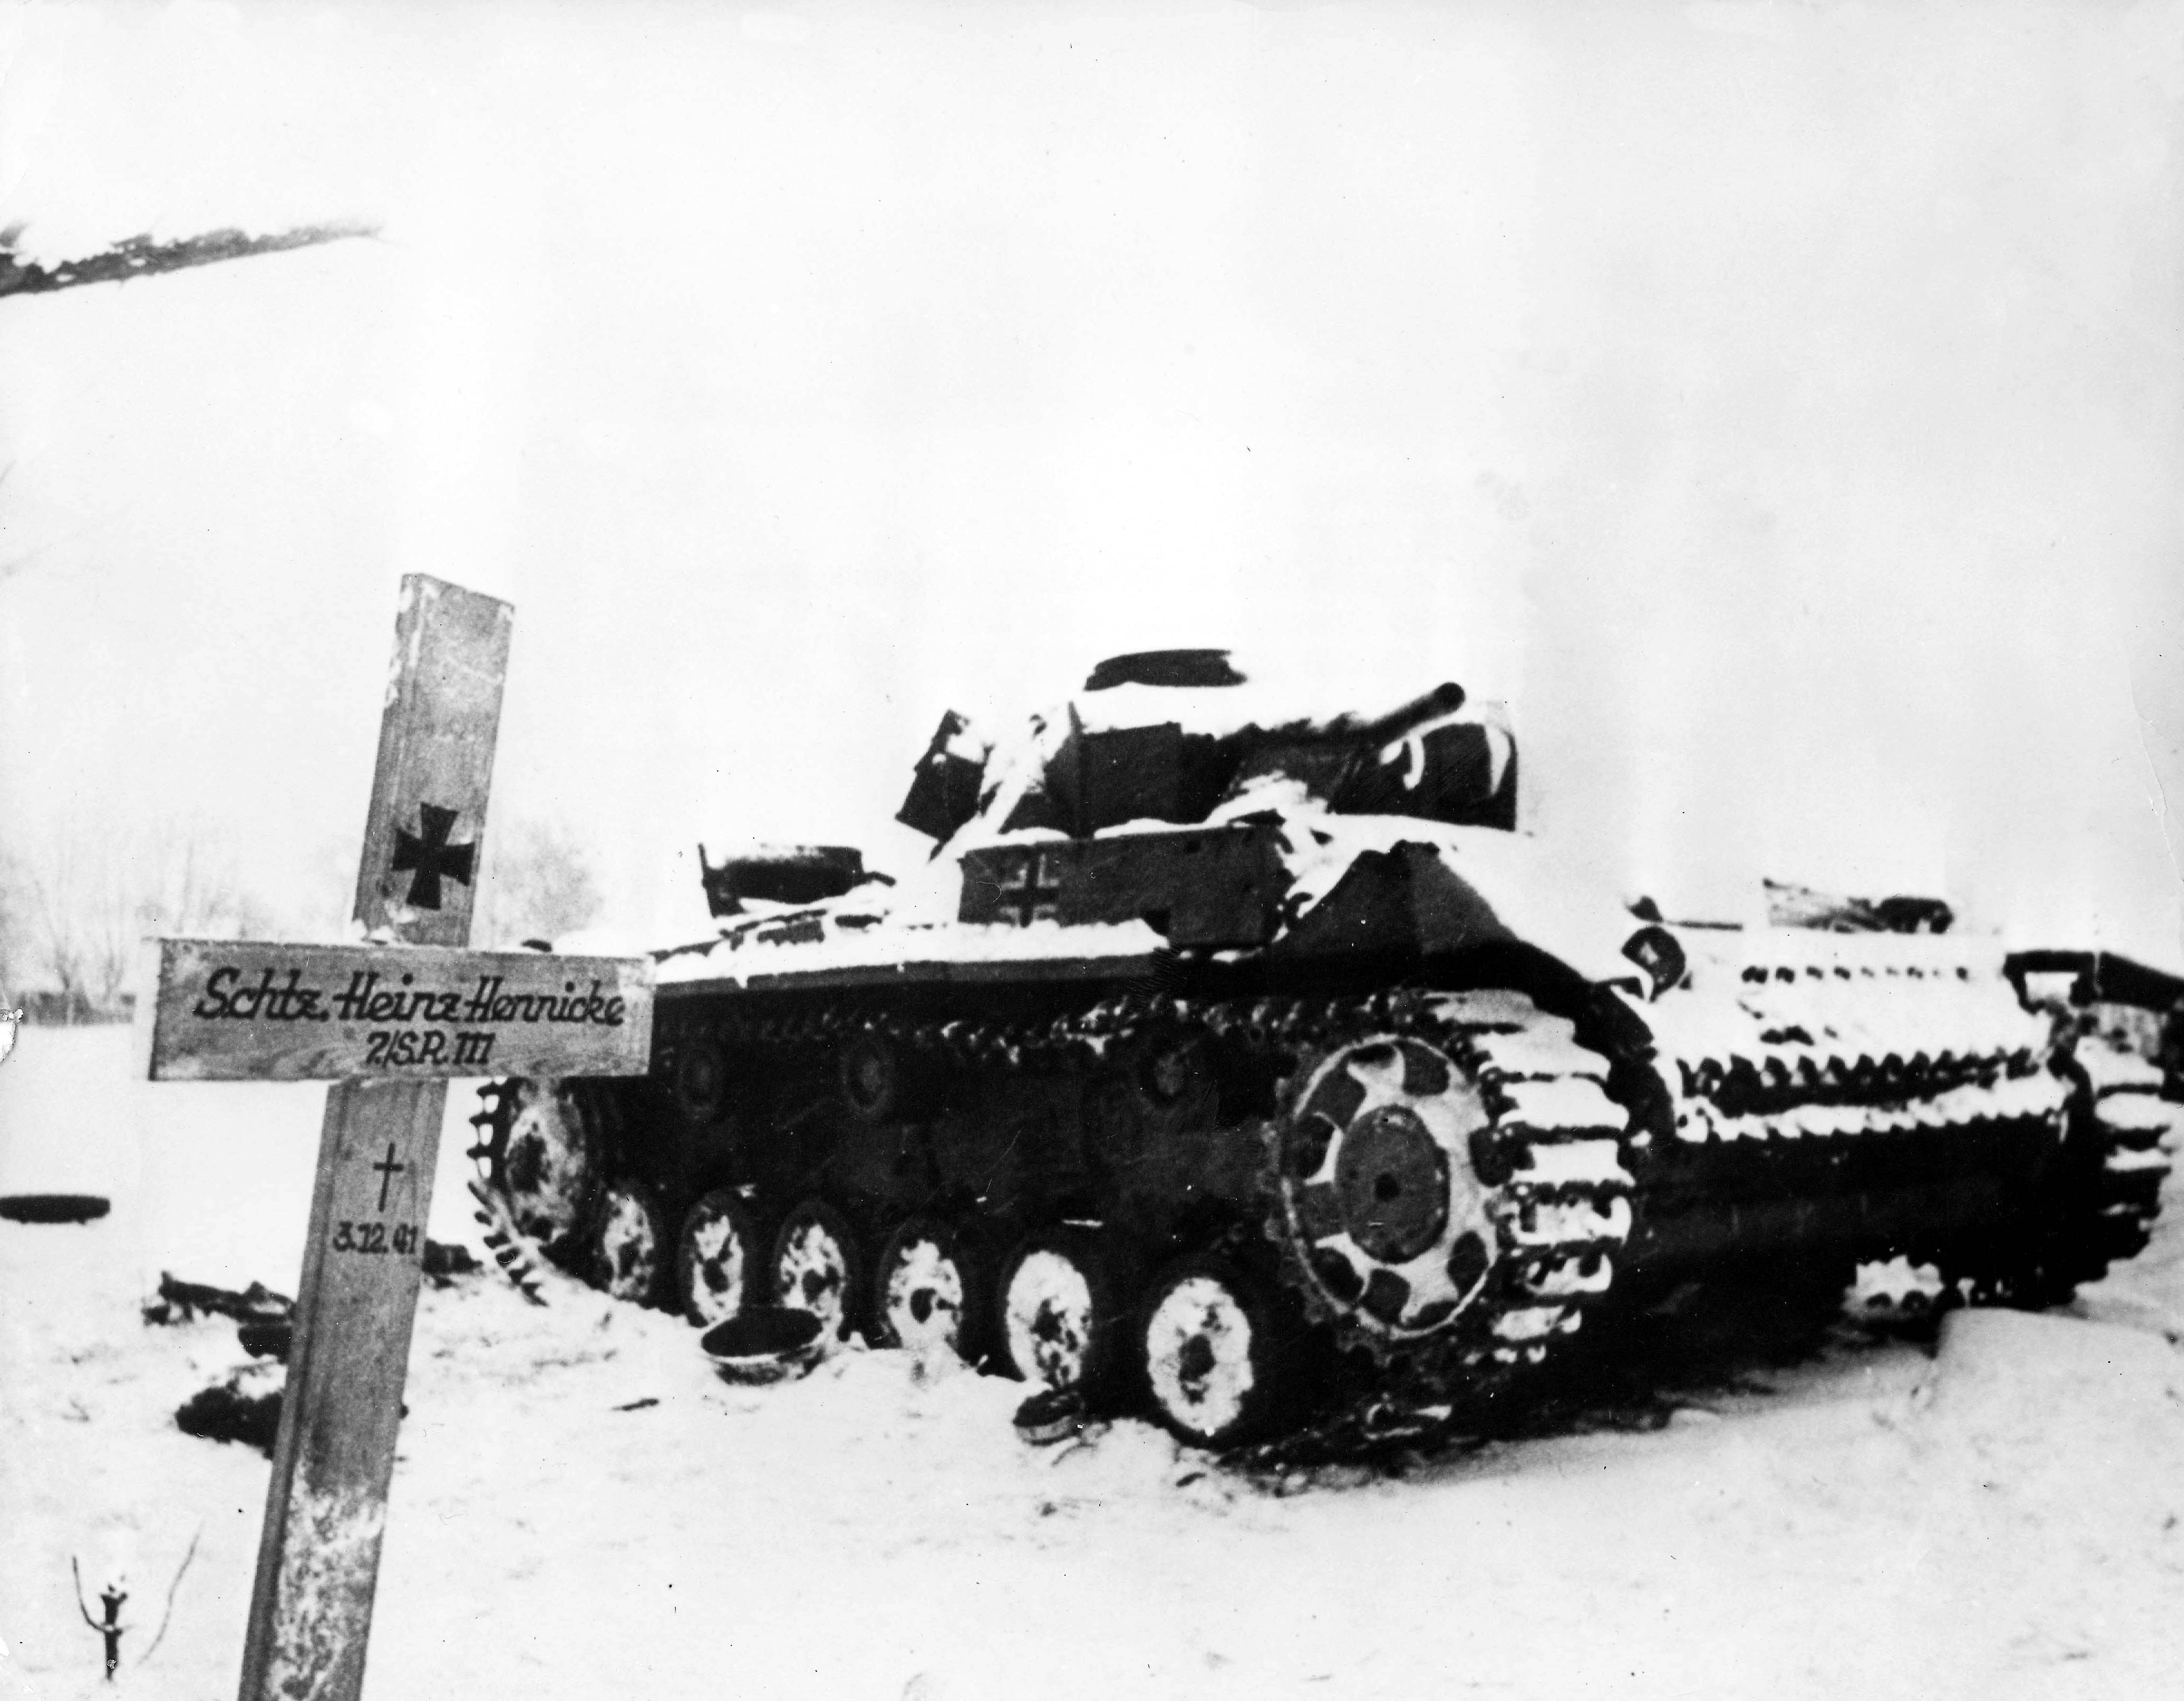 Un carro armato in azione nella neve: Hitler non aveva assolutamente tenuto in considerazione le condizioni estreme dell’inverno russo